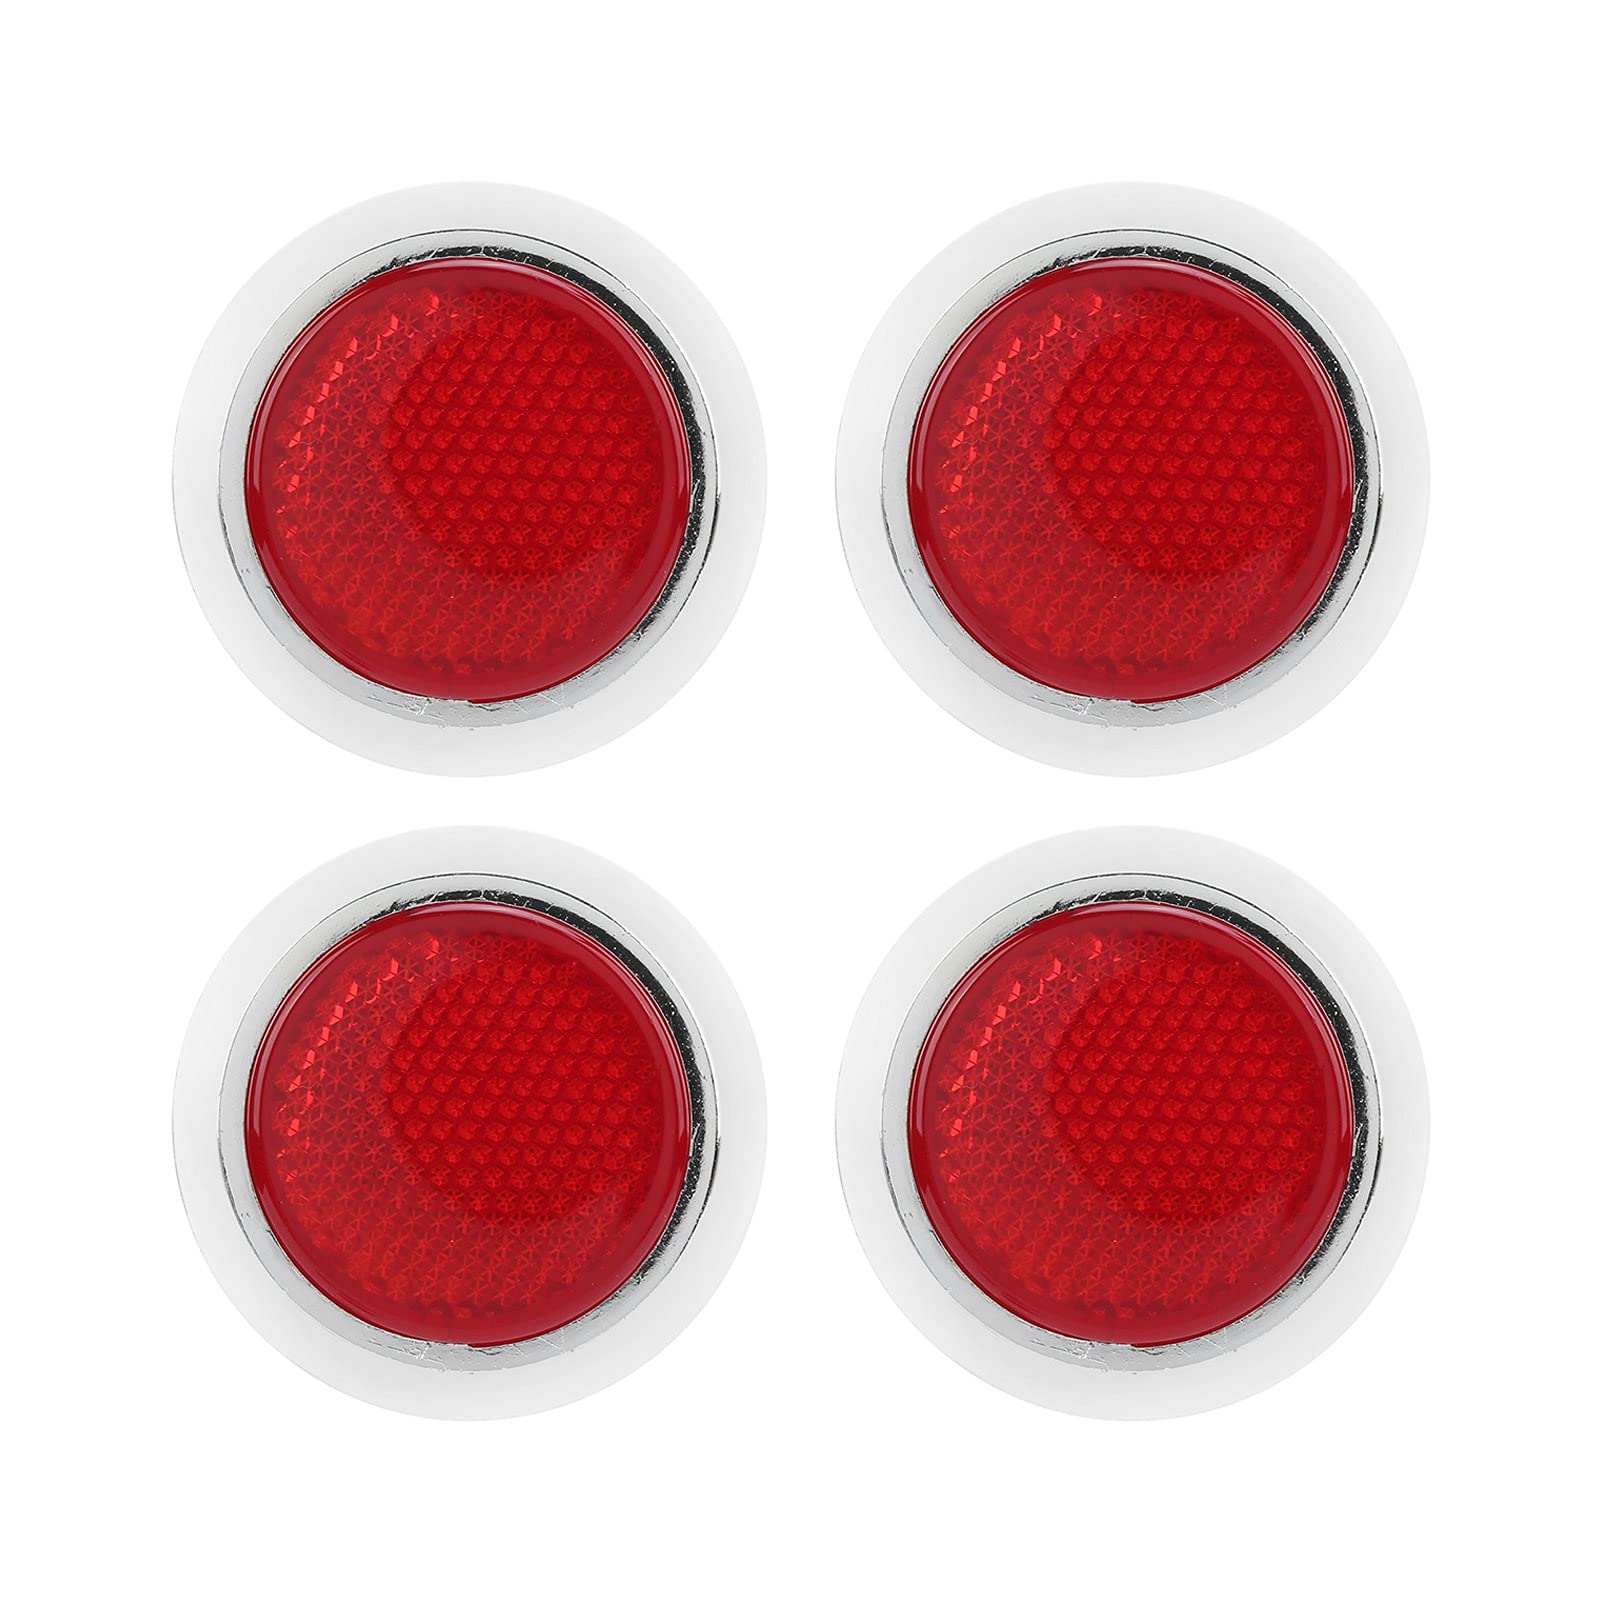 Xwyebo Erhöht Die Sicherheit Mit 4 Roten Reflektoren – ABS-Chrom-Verzierung, Runder Reflektierender Schutz Für Auto Und Motorrad von xwyebo